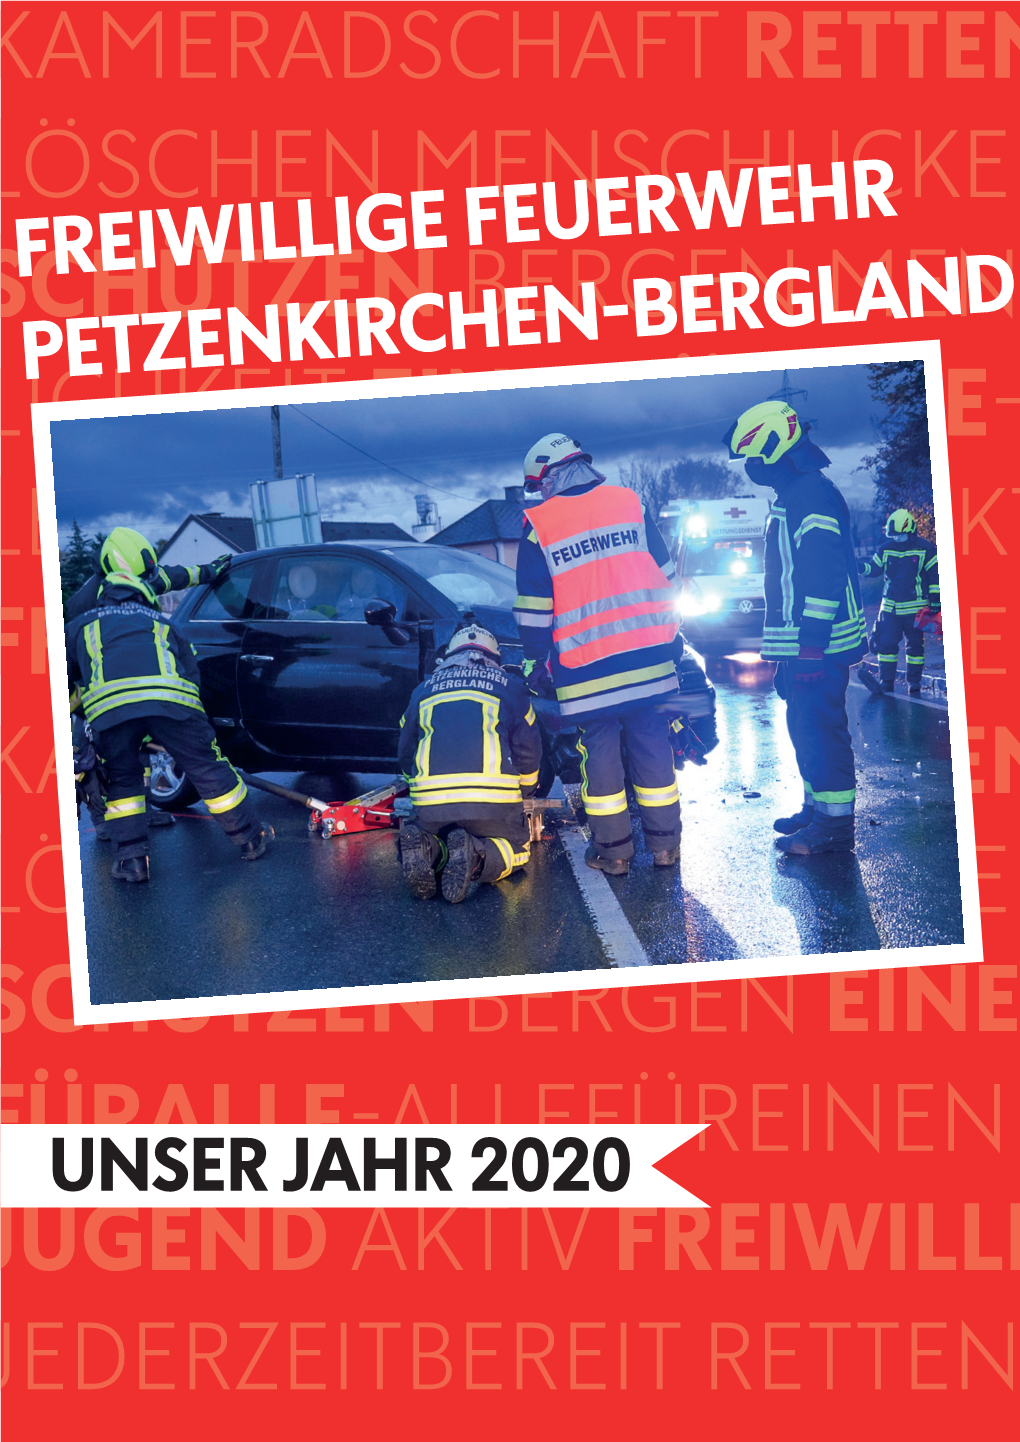 FF Petzenkirchen-Bergland Hat Auch in Diesen Schwierigen Zeiten, Stärke, Disziplin Und Zusammenhalt Bewiesen, Um Anderen Menschen in Not Zu Helfen